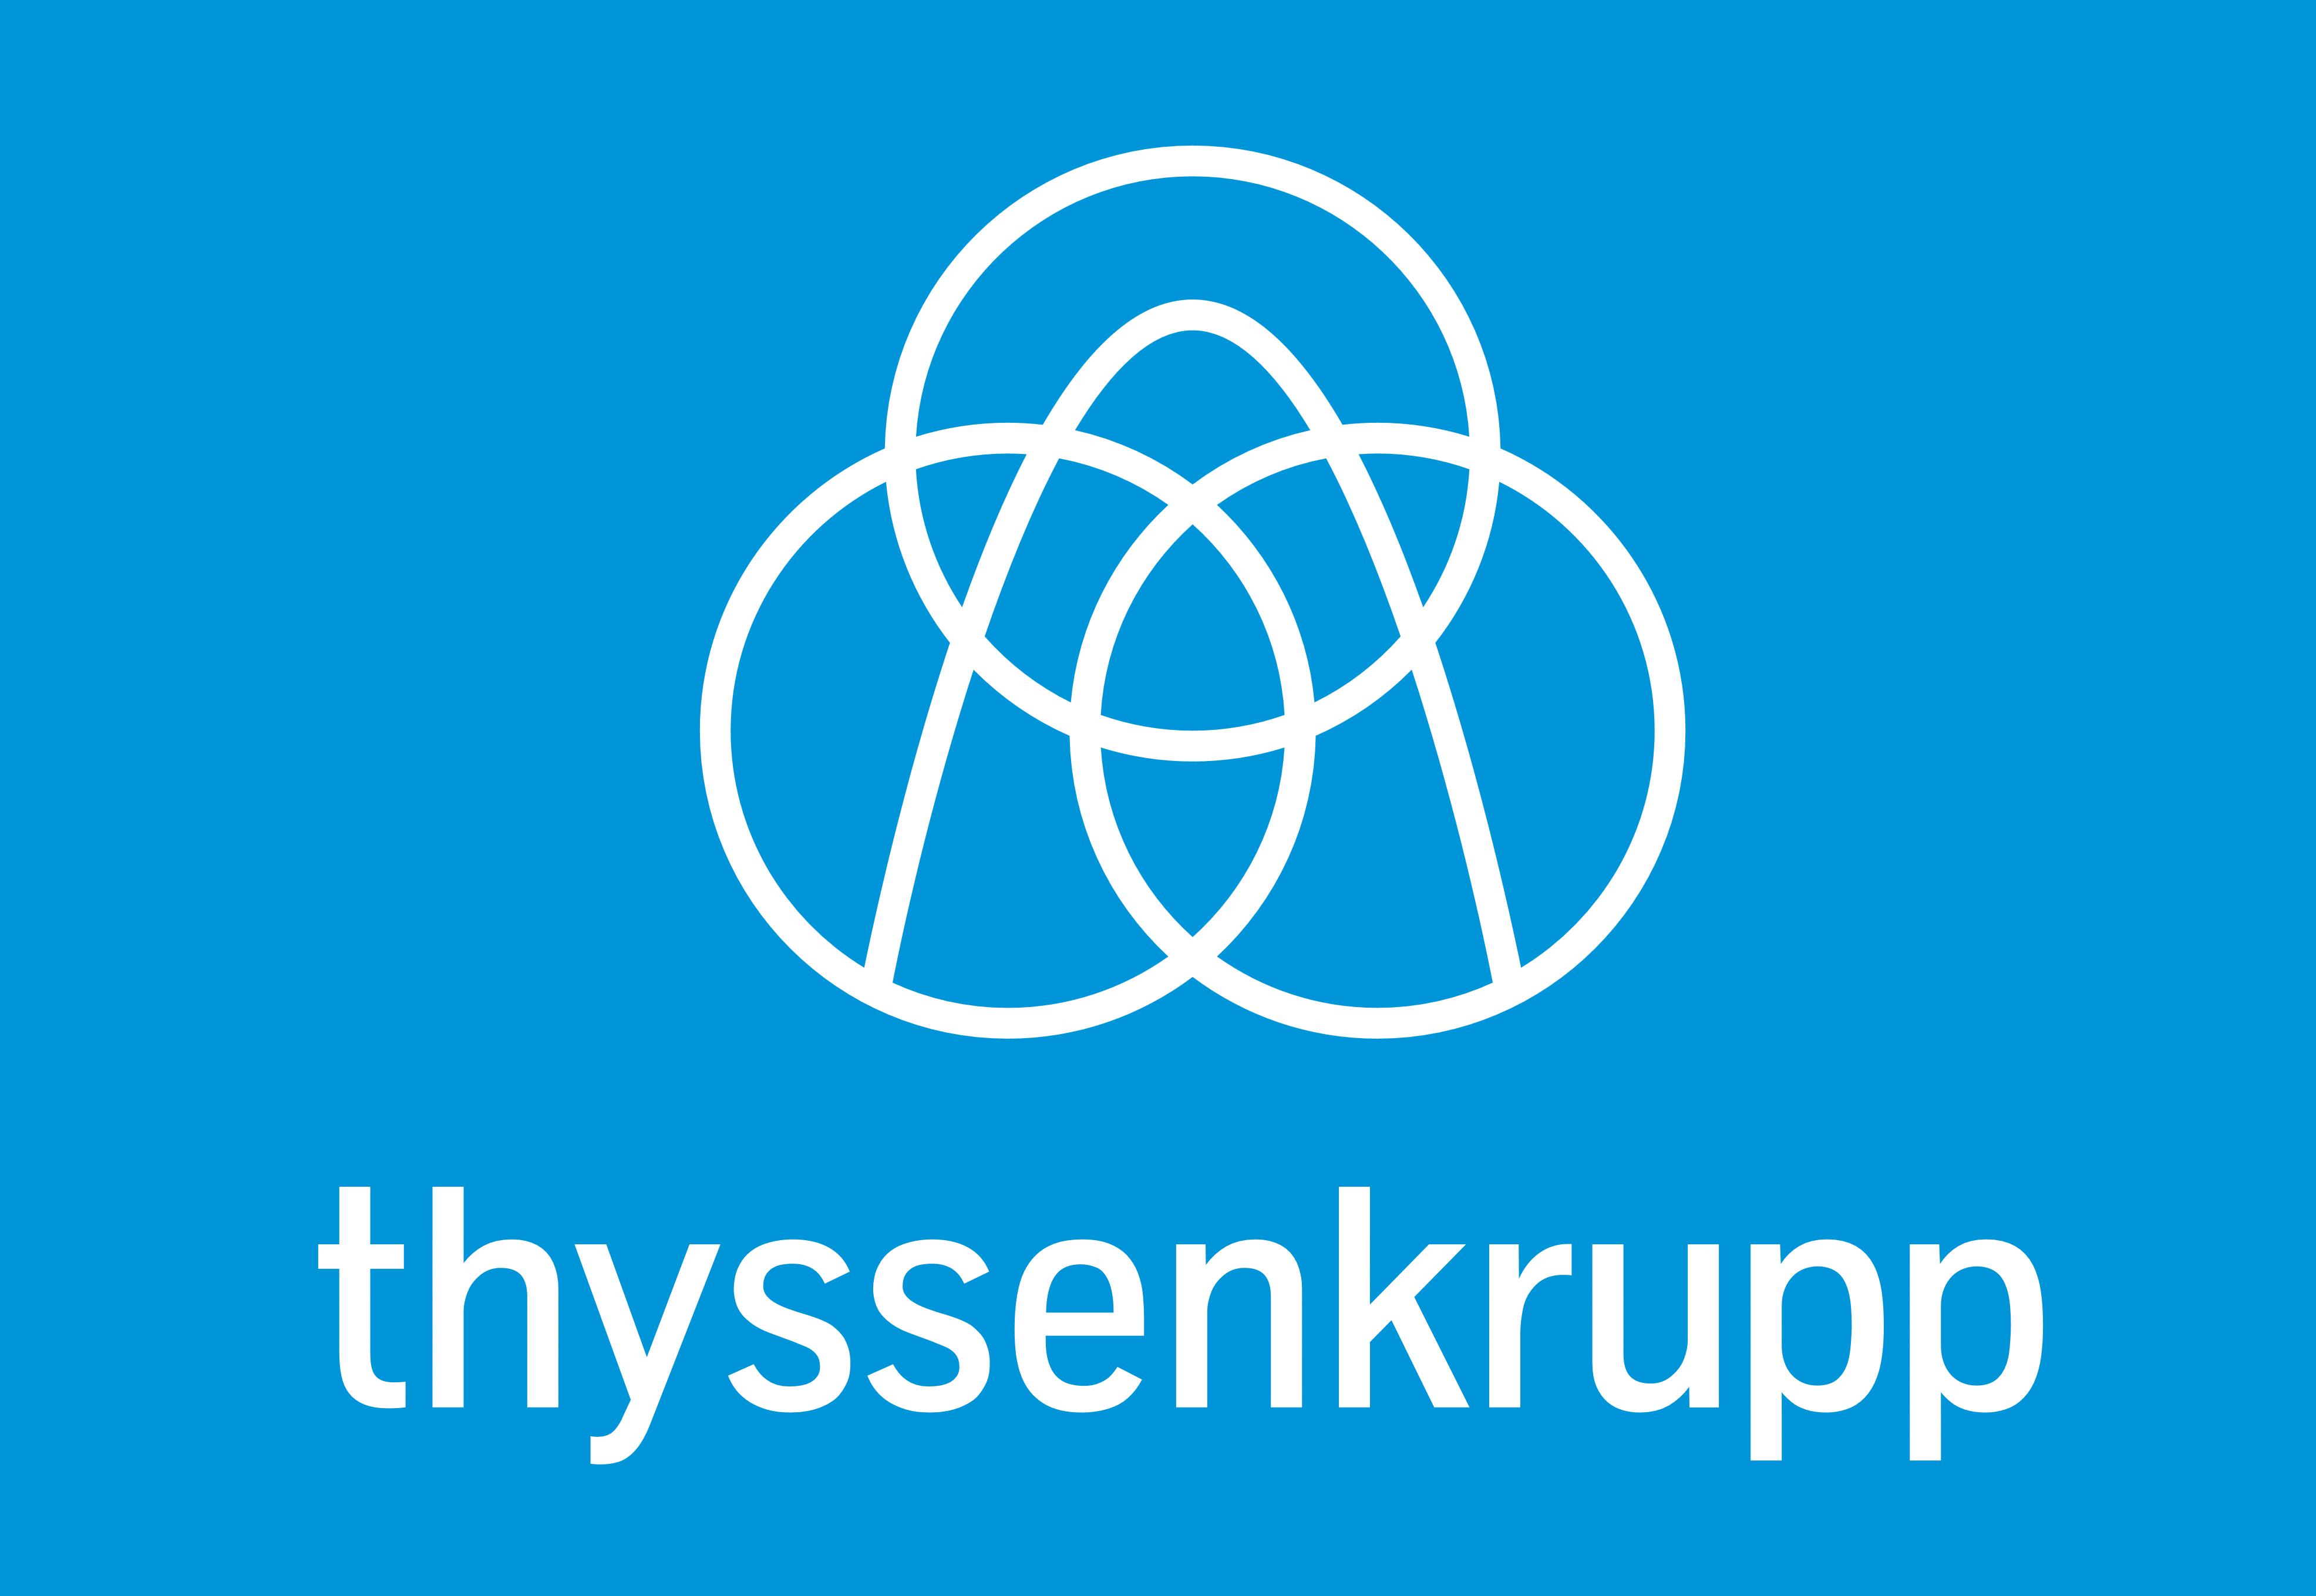 Thyssenkrupp_logo_blue-1